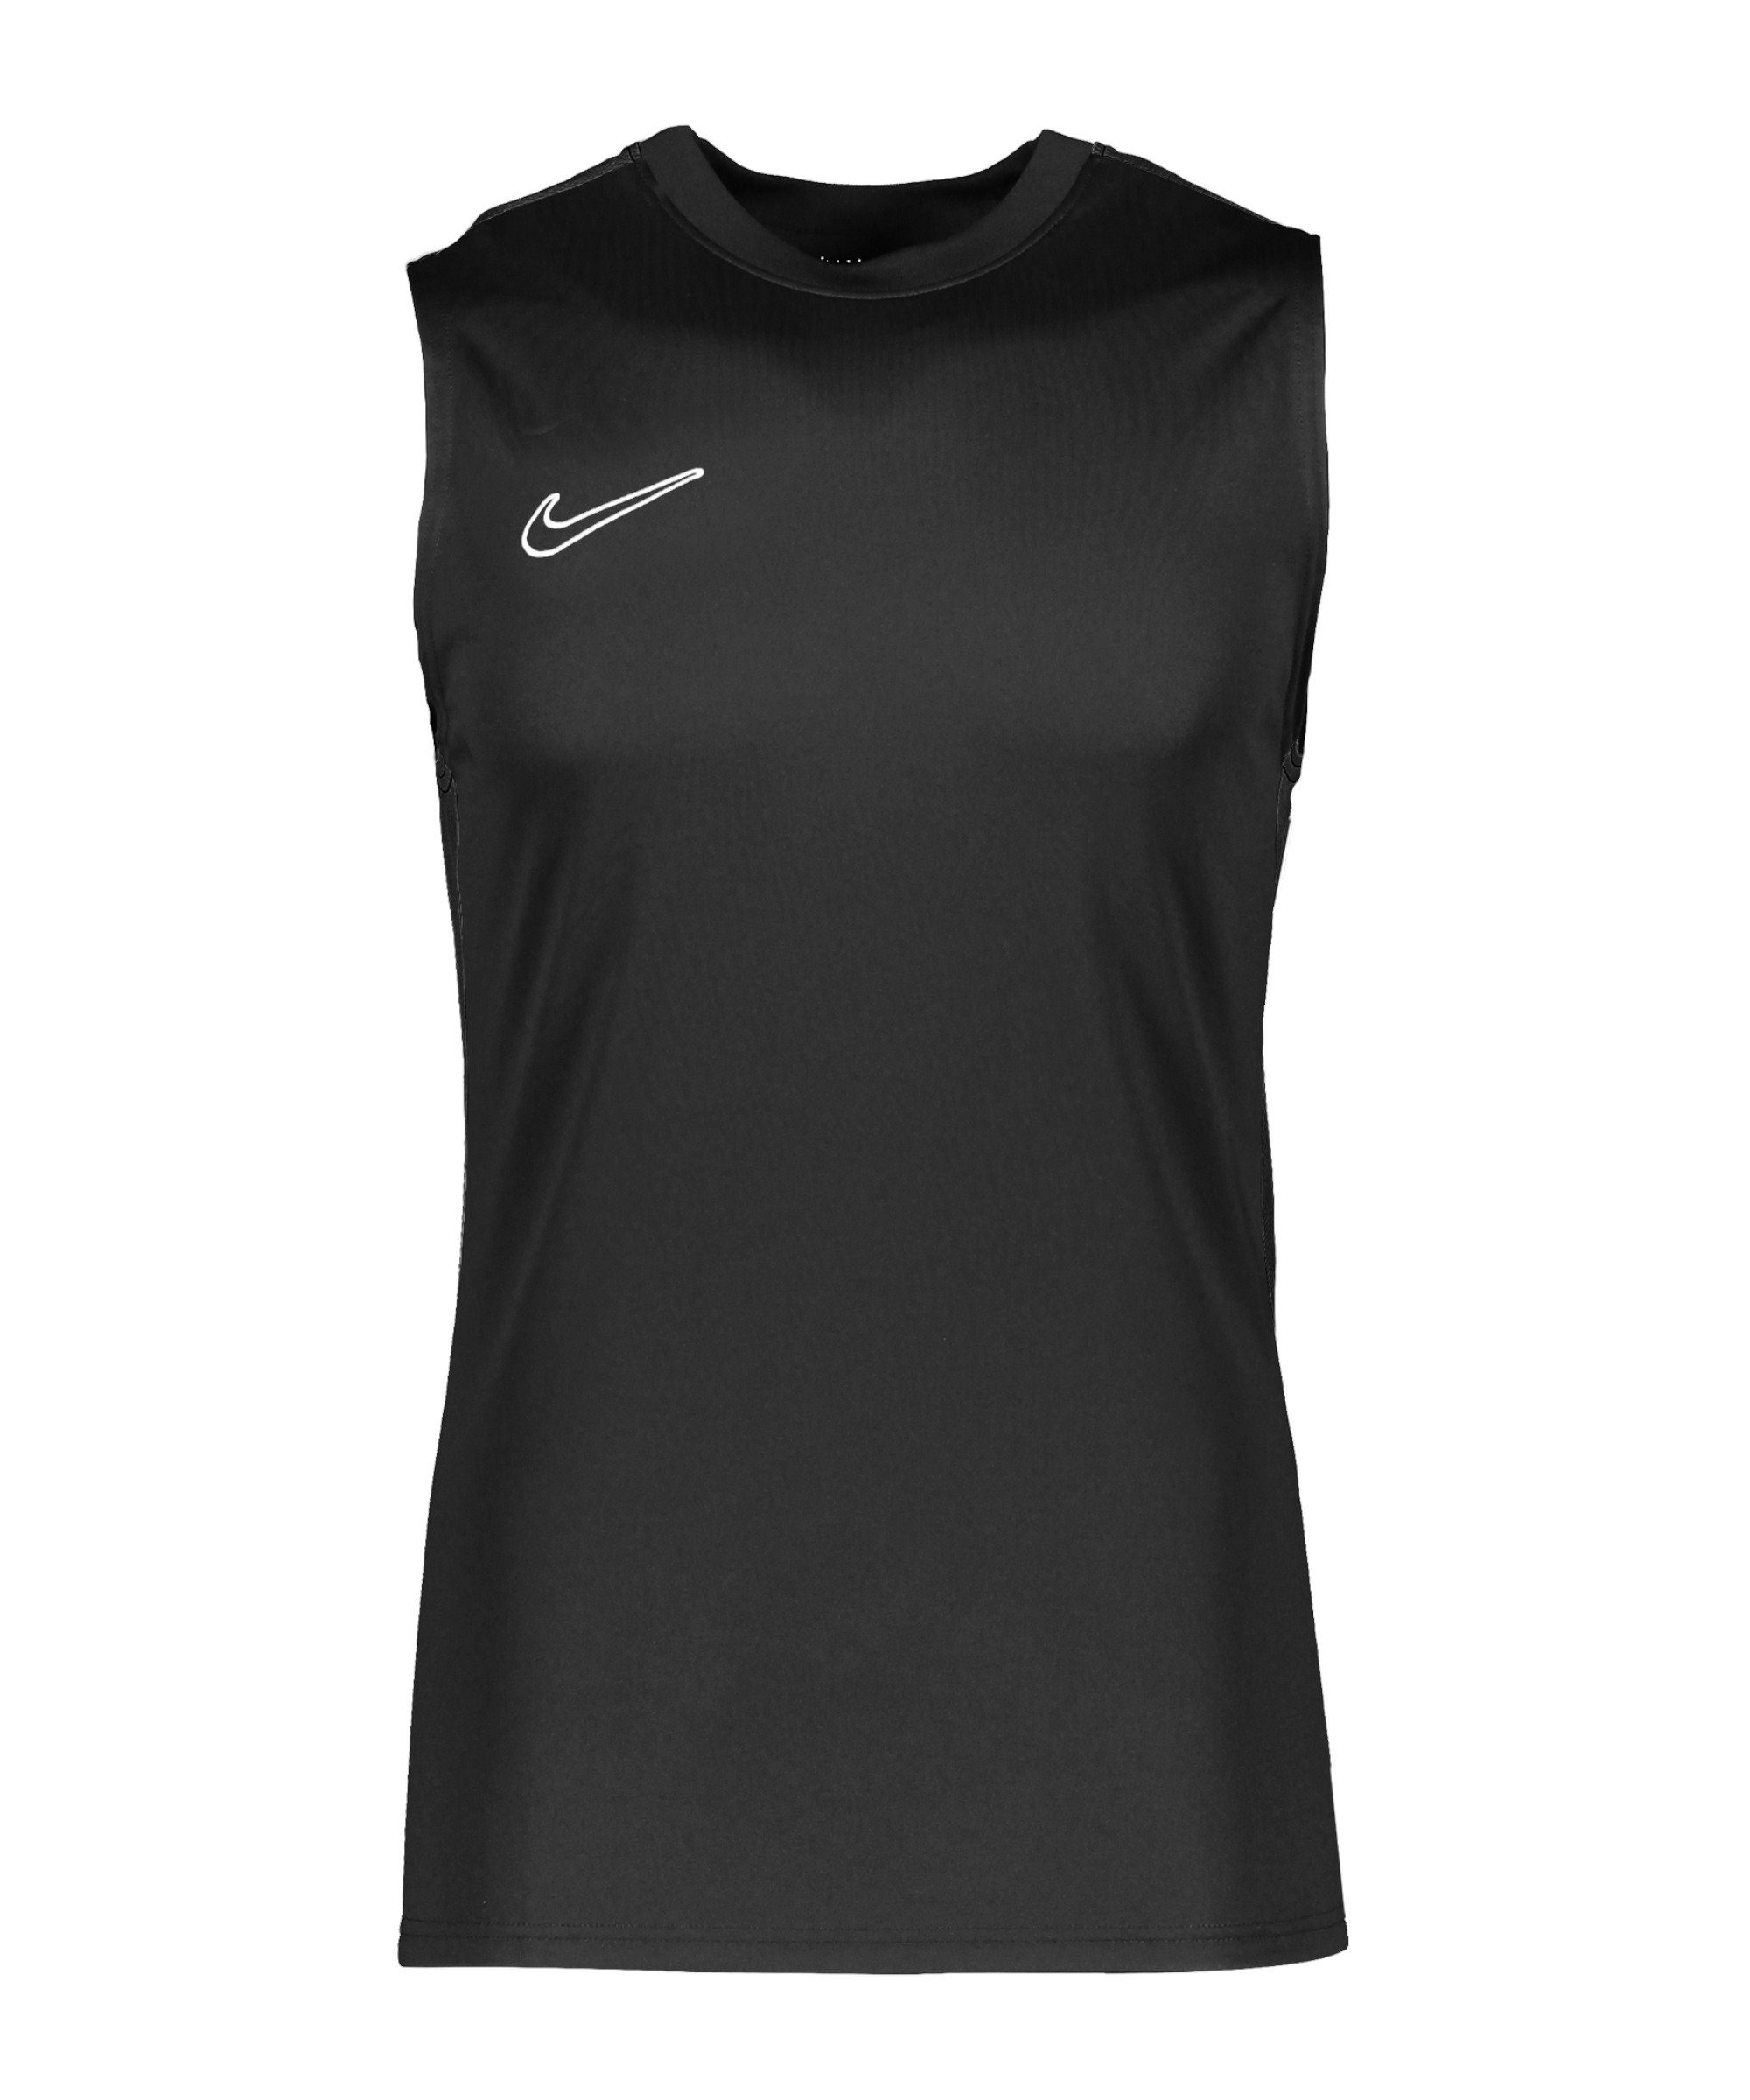 Academy default schwarzweiss Tanktop Dri-FIT Nike T-Shirt